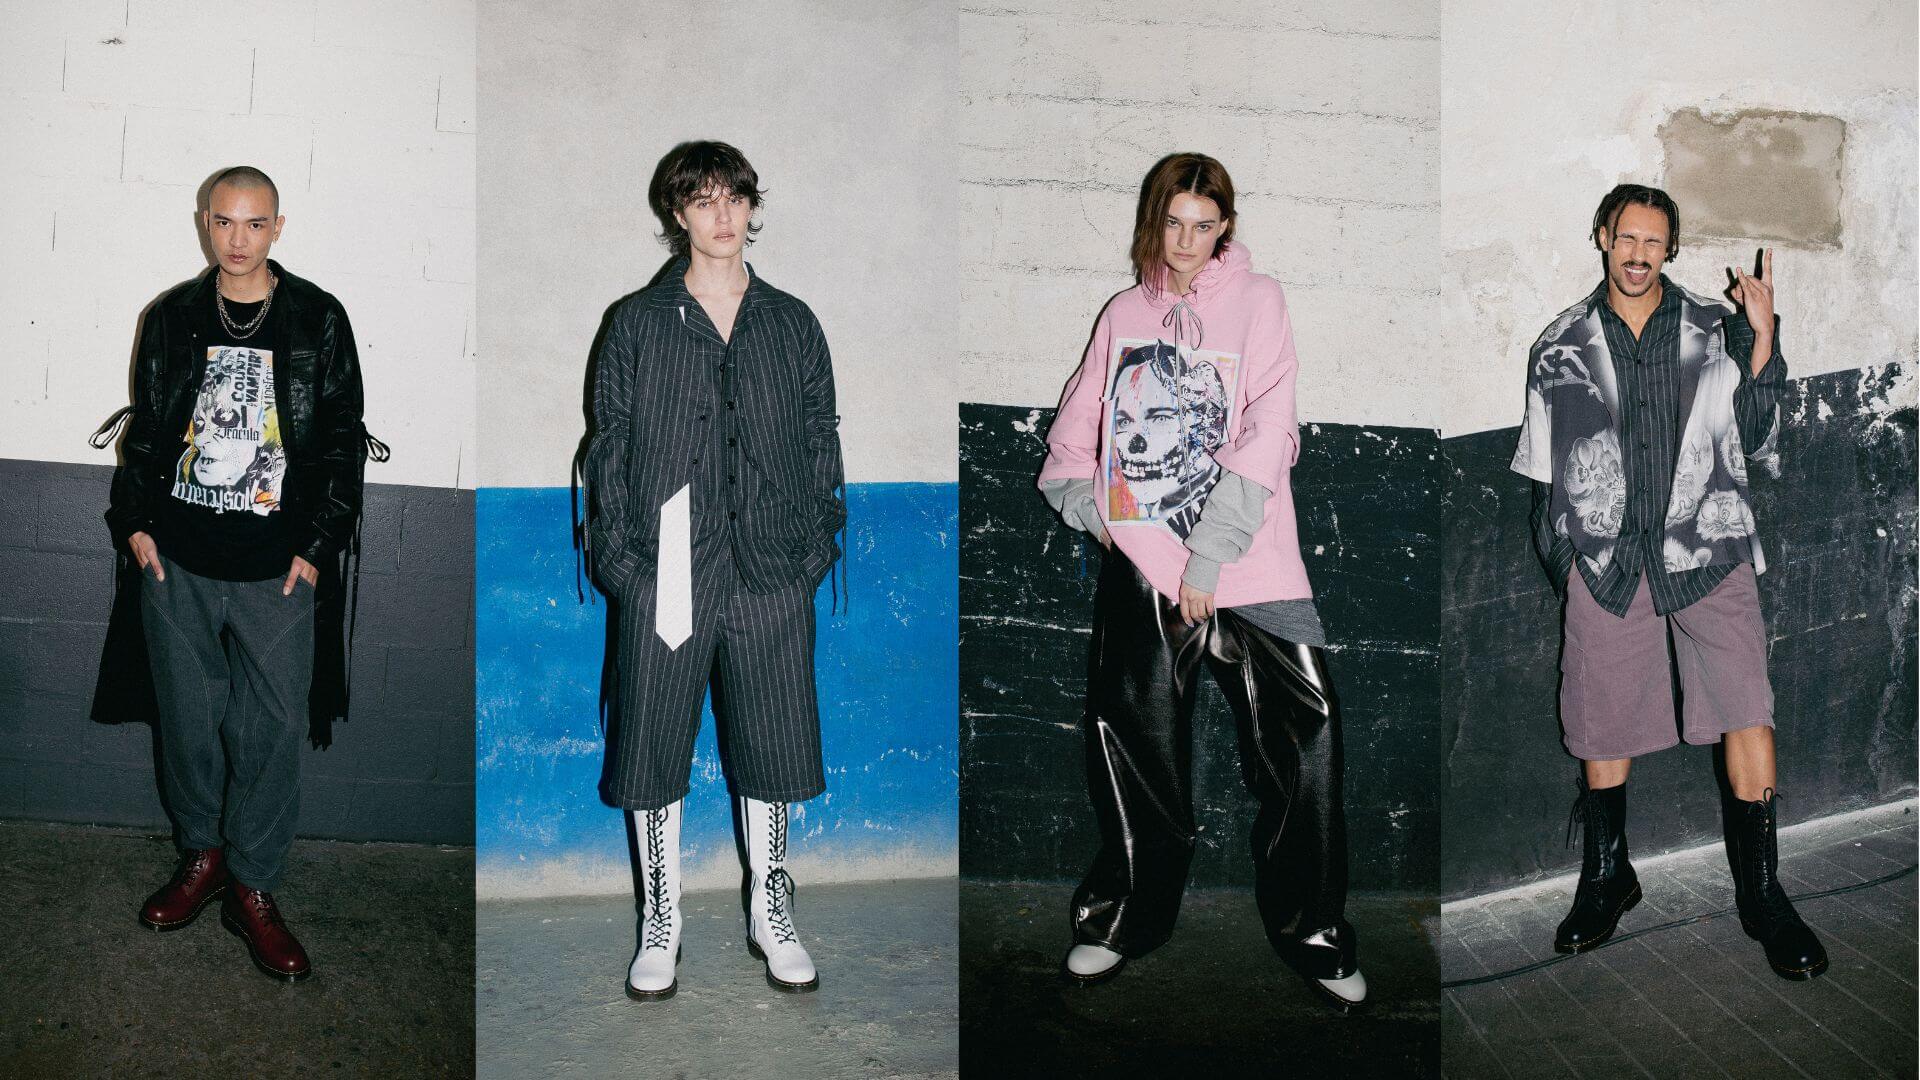 Présentation de quatre individus portant des tenues streetwear urbaines, montrant un mélange d'imprimés audacieux, de vêtements surdimensionnés et de styles éclectiques.